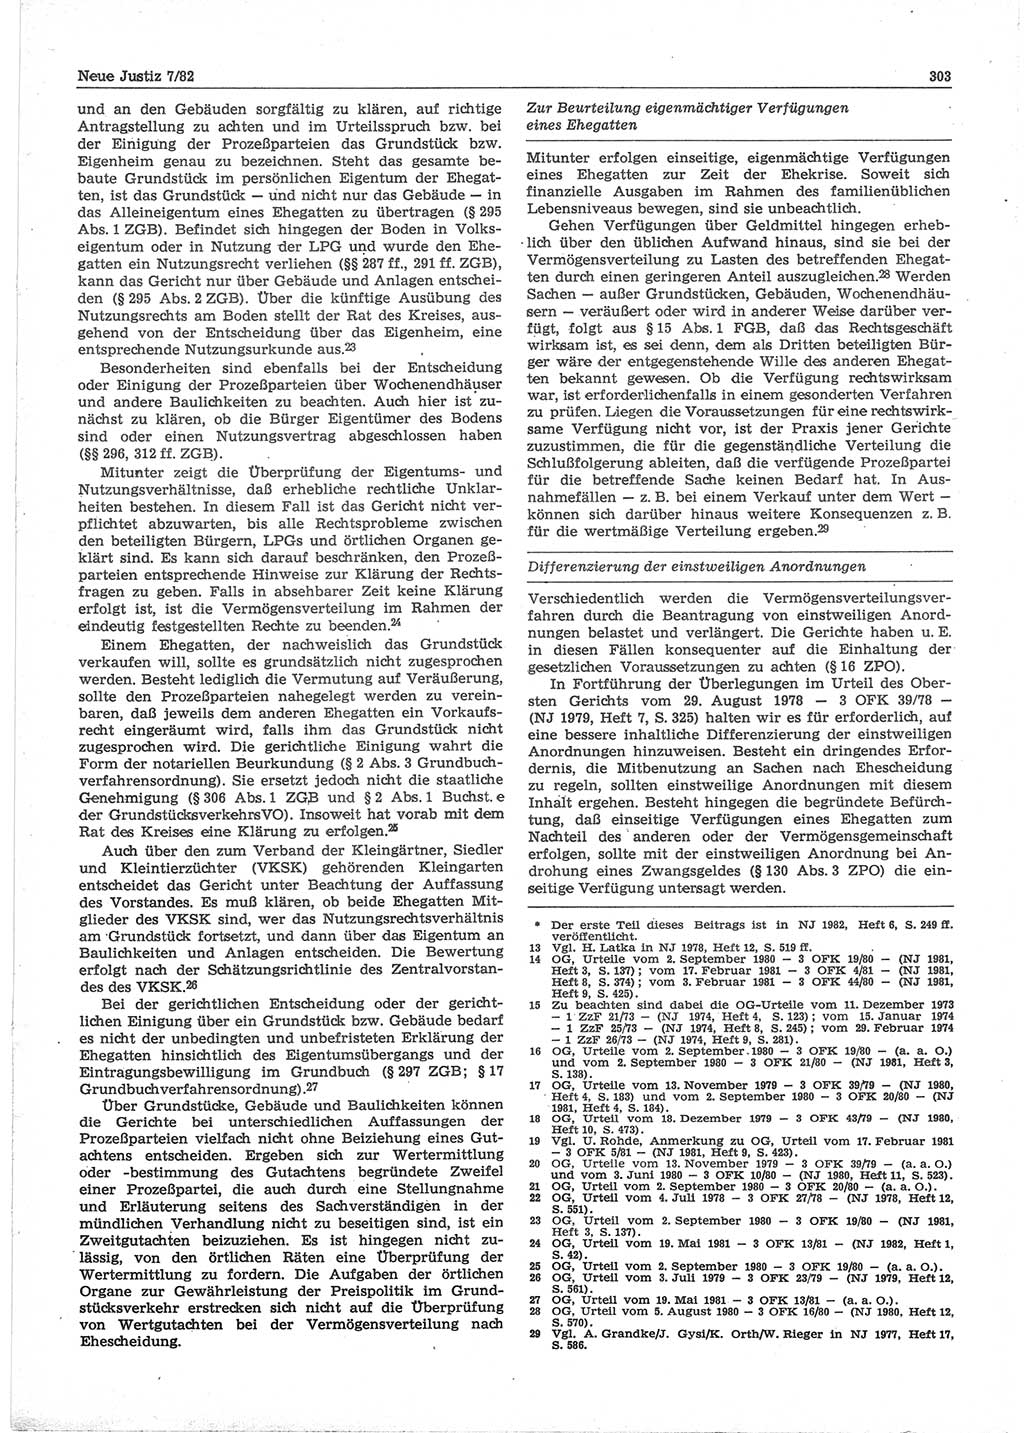 Neue Justiz (NJ), Zeitschrift für sozialistisches Recht und Gesetzlichkeit [Deutsche Demokratische Republik (DDR)], 36. Jahrgang 1982, Seite 303 (NJ DDR 1982, S. 303)